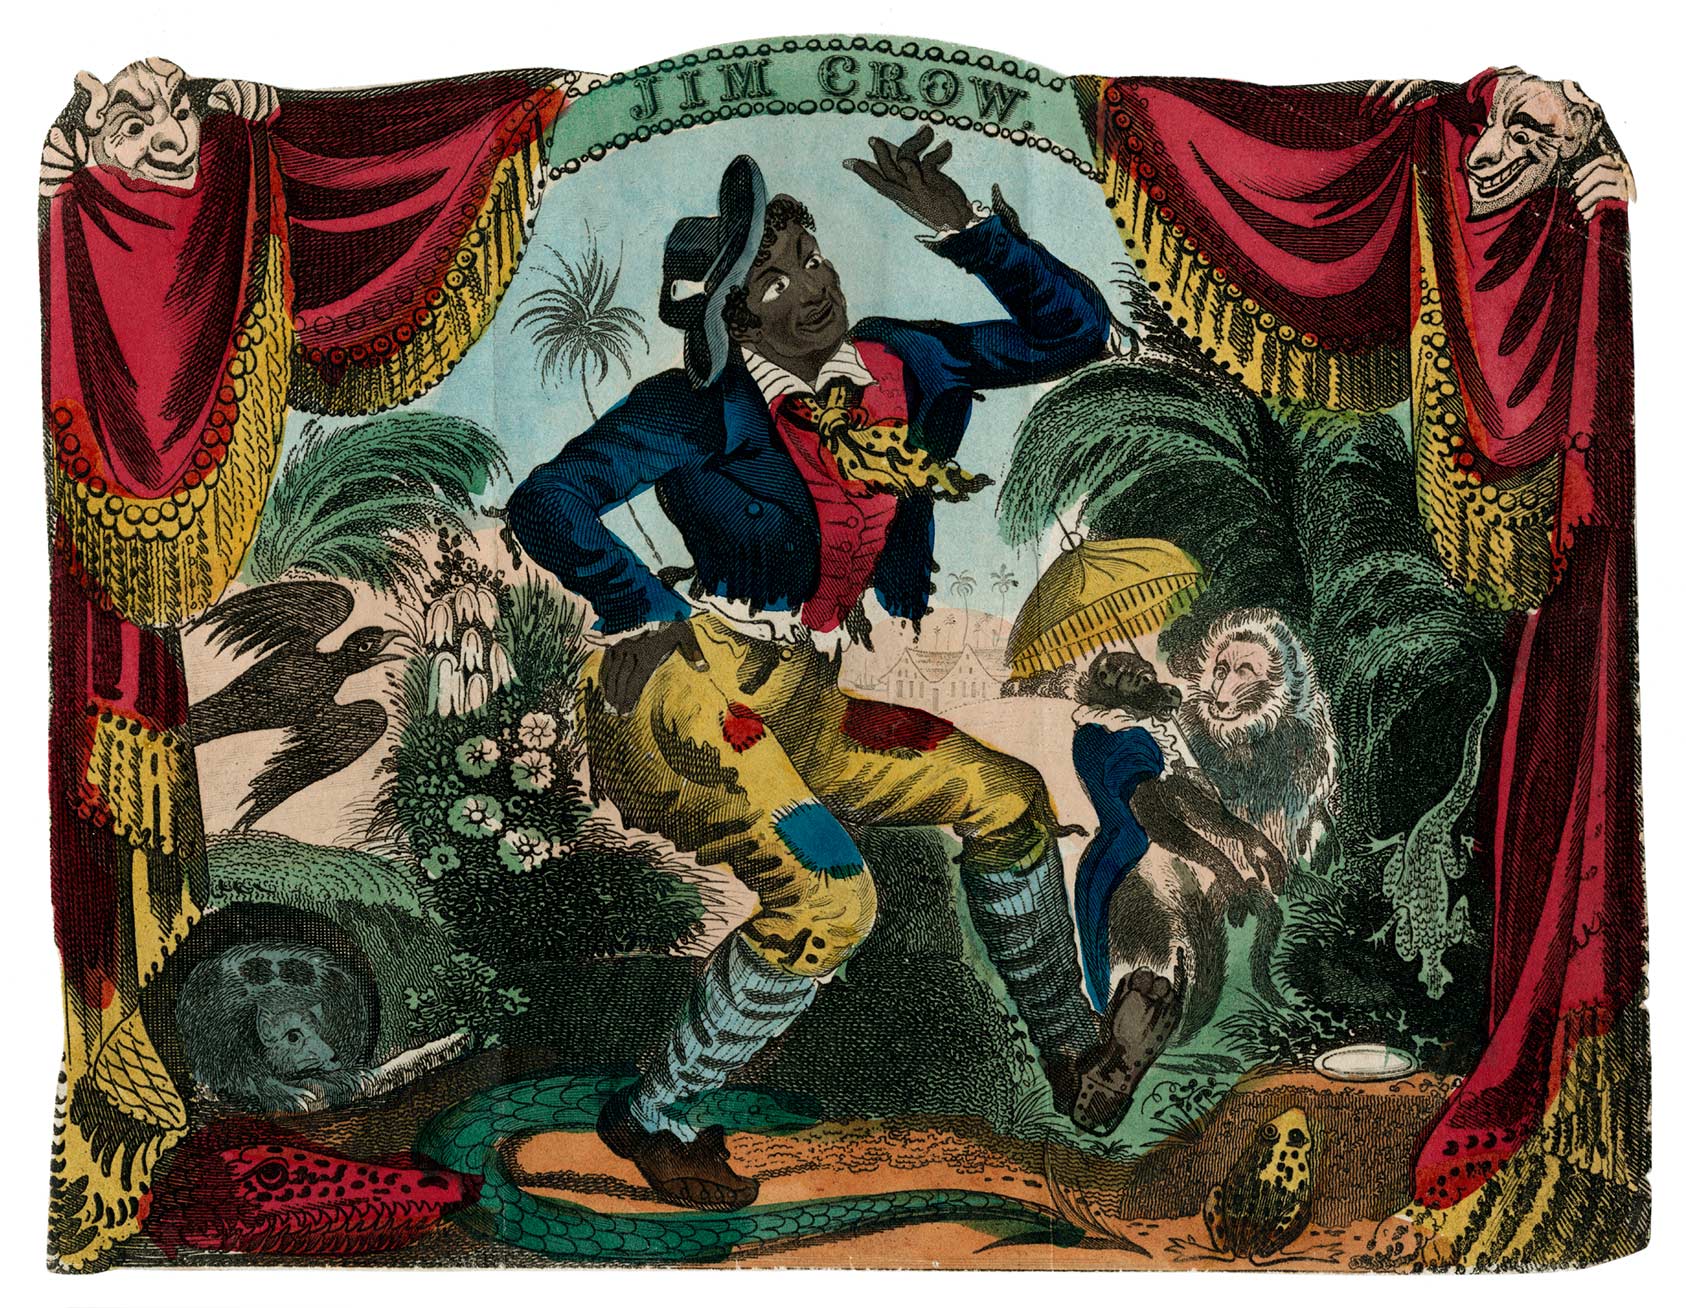 thomas-rice-as-jim-crow-at-the-bowery-theatre-new-york-1833artotype